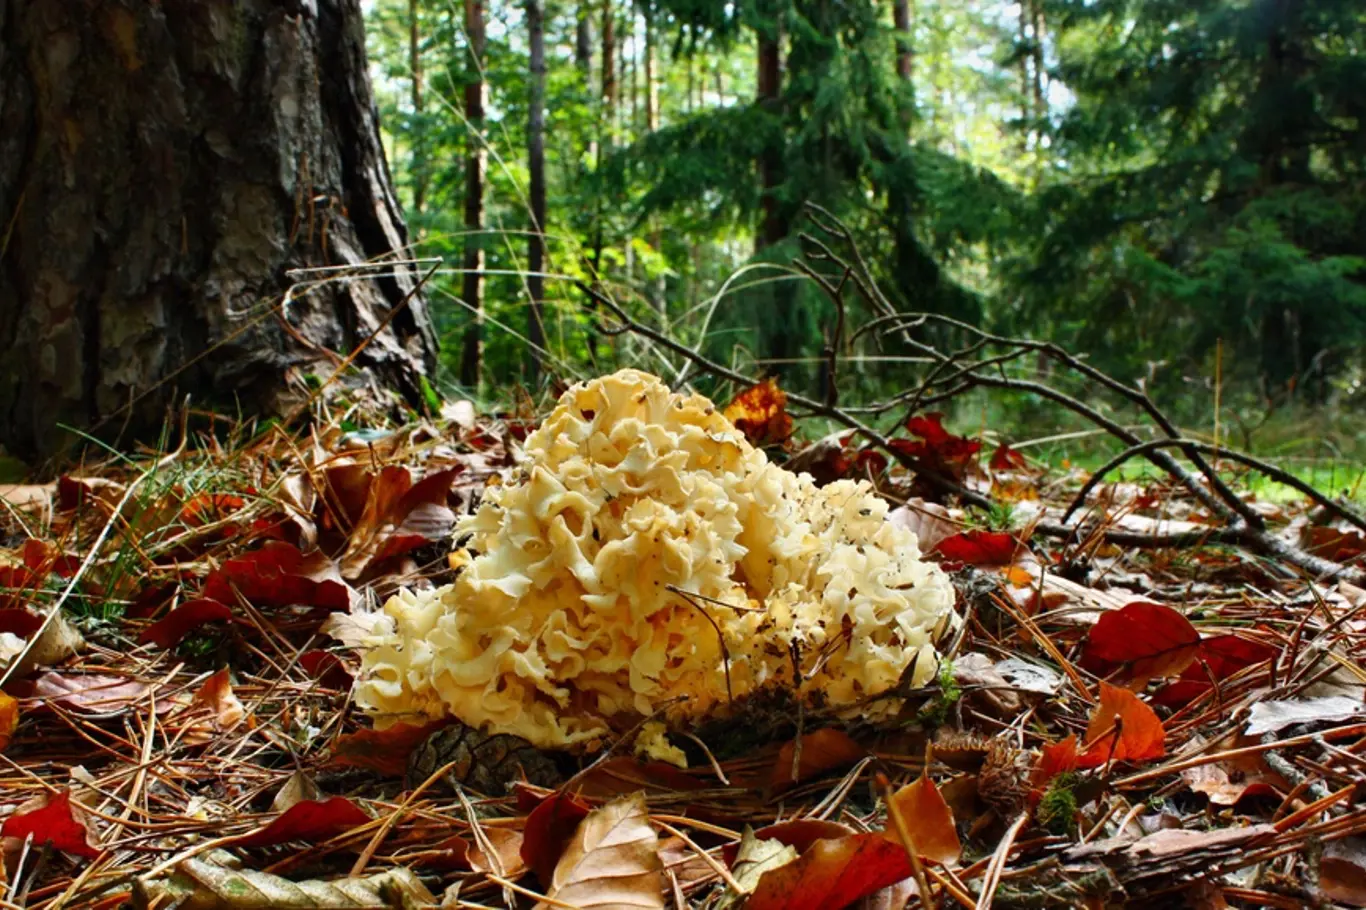 Kotrč kadeřavý (Sparassis crispa) je houba, která parazituje převážně na kořenech borovic.